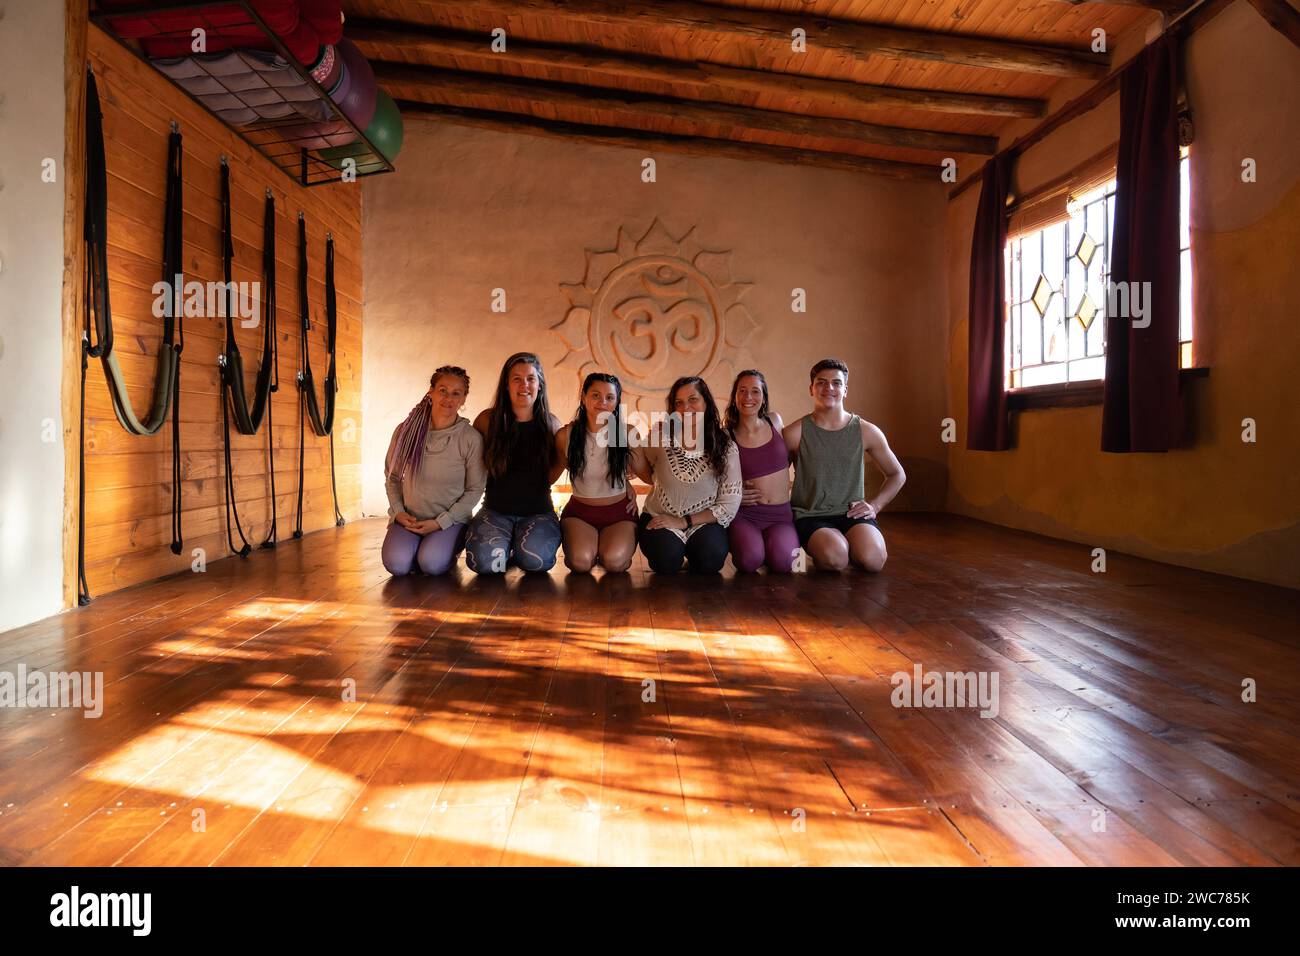 Portrait de groupe d'une communauté de personnes pratiquant le yoga souriant et regardant la caméra. Prise de vue générale éclairée par la lumière naturelle Banque D'Images